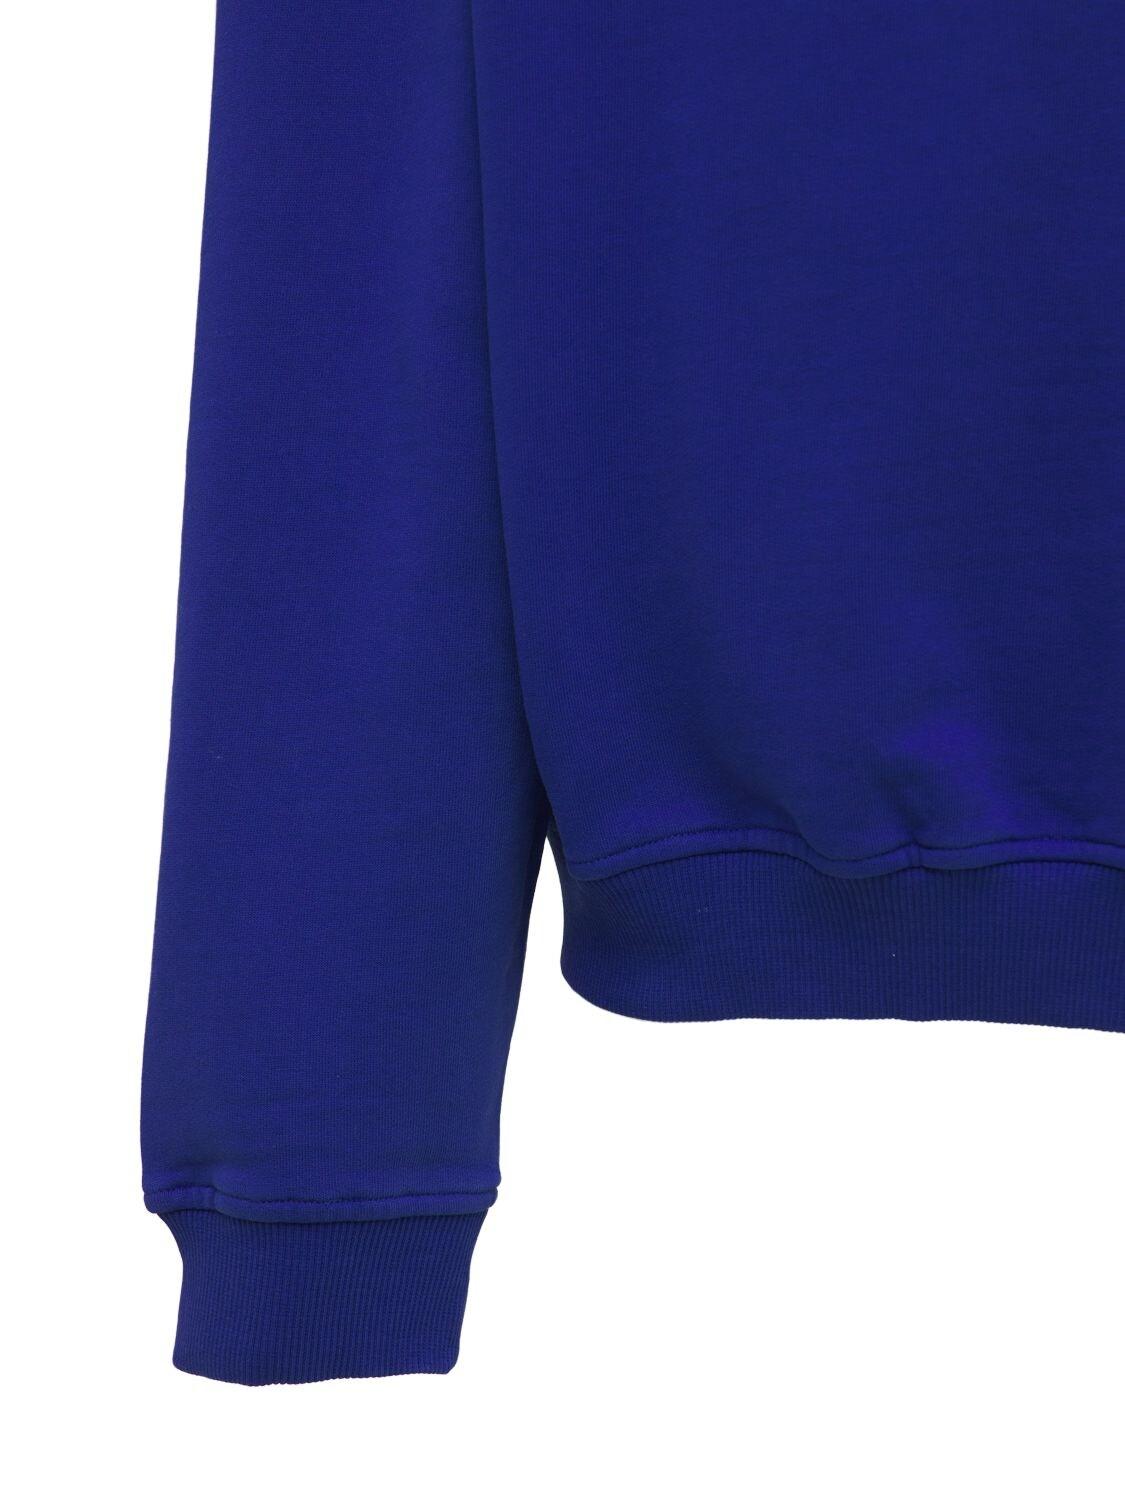 Jaded London Neutrals Cotton Sweatshirt in Blue for Men - Lyst